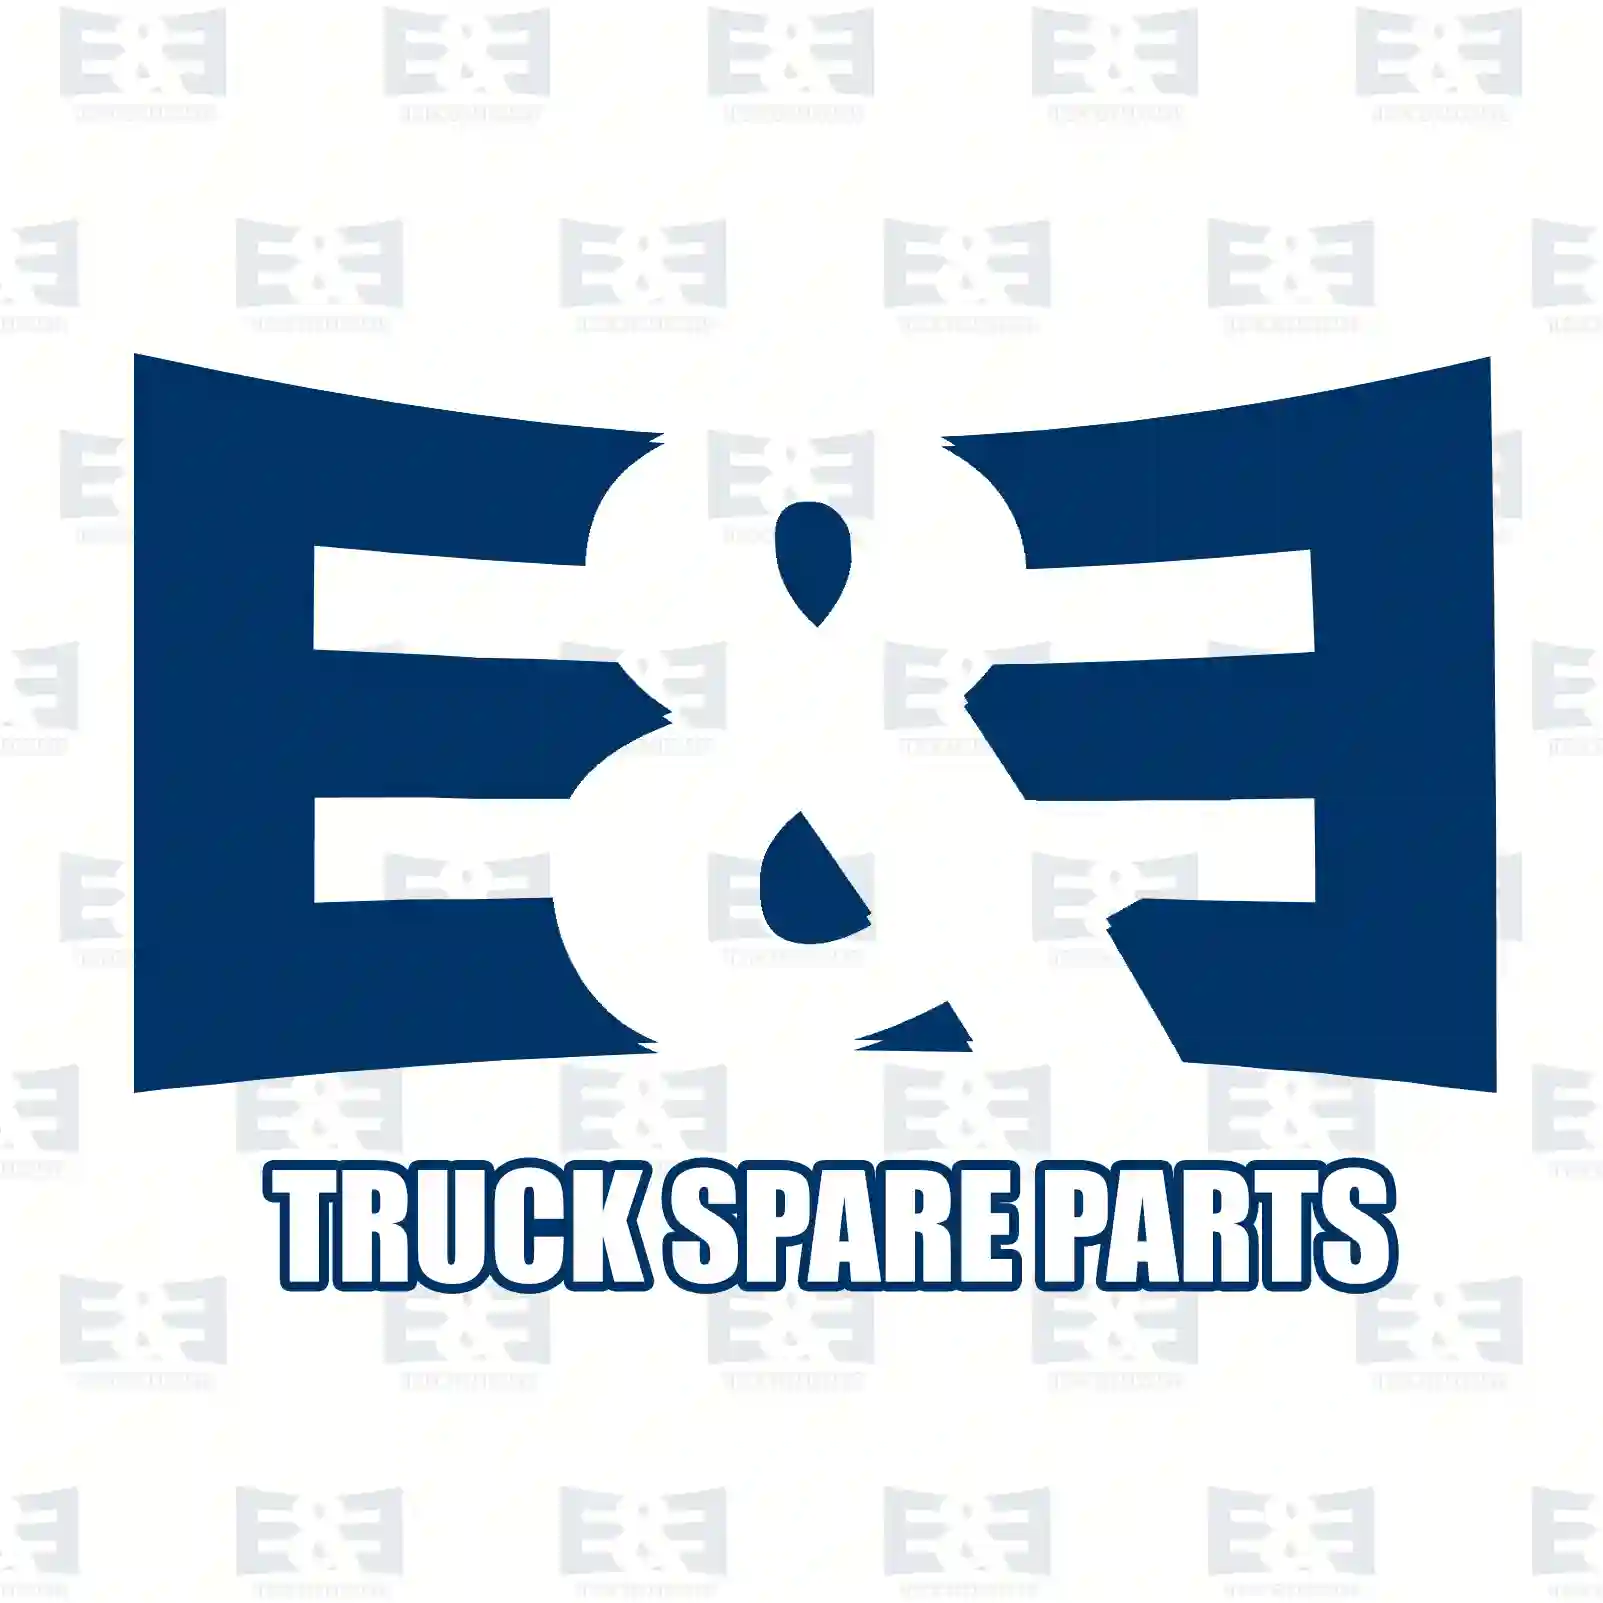 Filter head, oil filter, 2E2277280, 1368963, 1422861 ||  2E2277280 E&E Truck Spare Parts | Truck Spare Parts, Auotomotive Spare Parts Filter head, oil filter, 2E2277280, 1368963, 1422861 ||  2E2277280 E&E Truck Spare Parts | Truck Spare Parts, Auotomotive Spare Parts